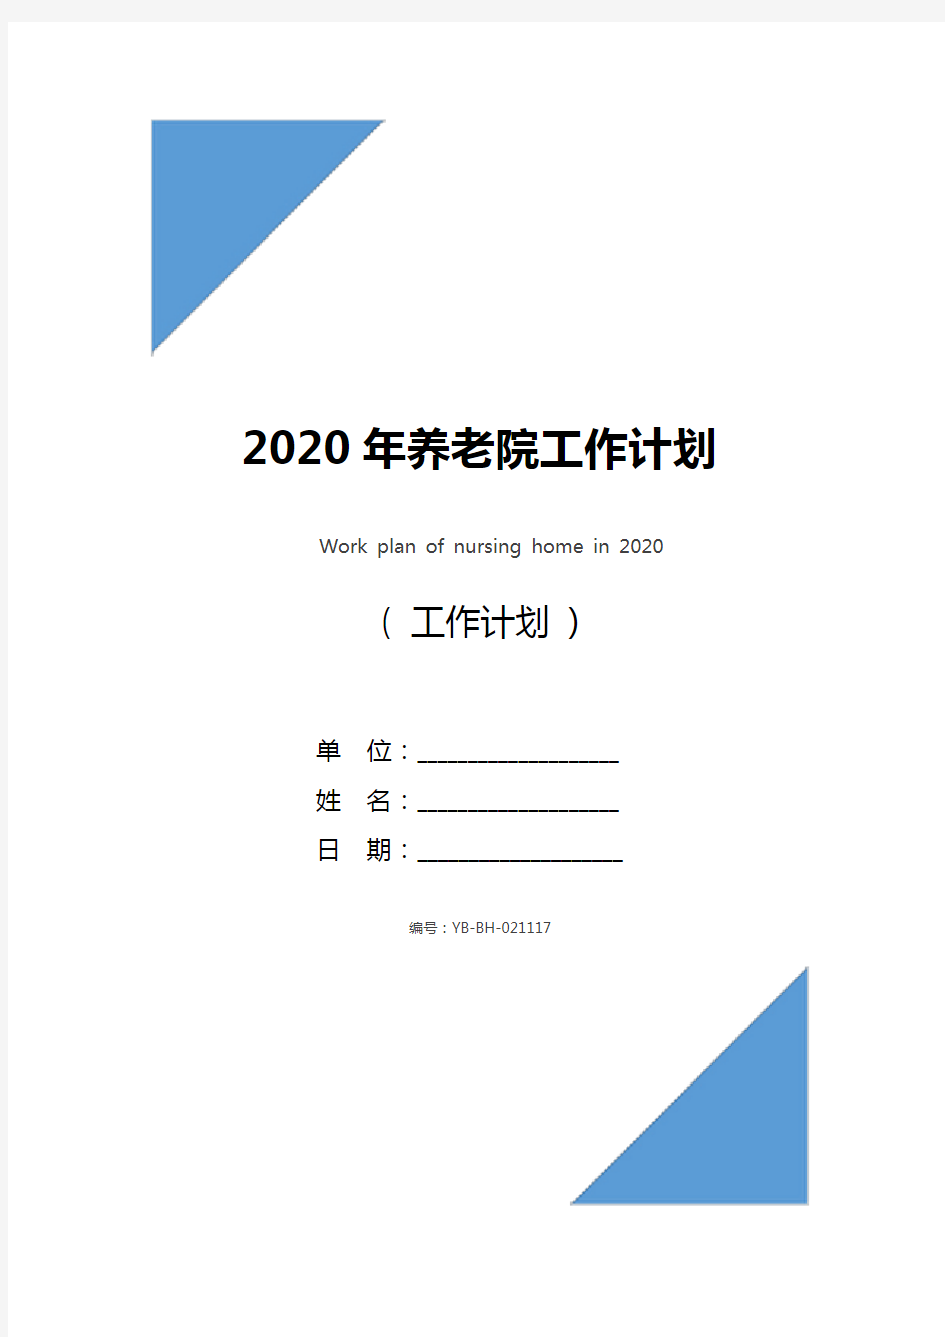 2020年养老院工作计划